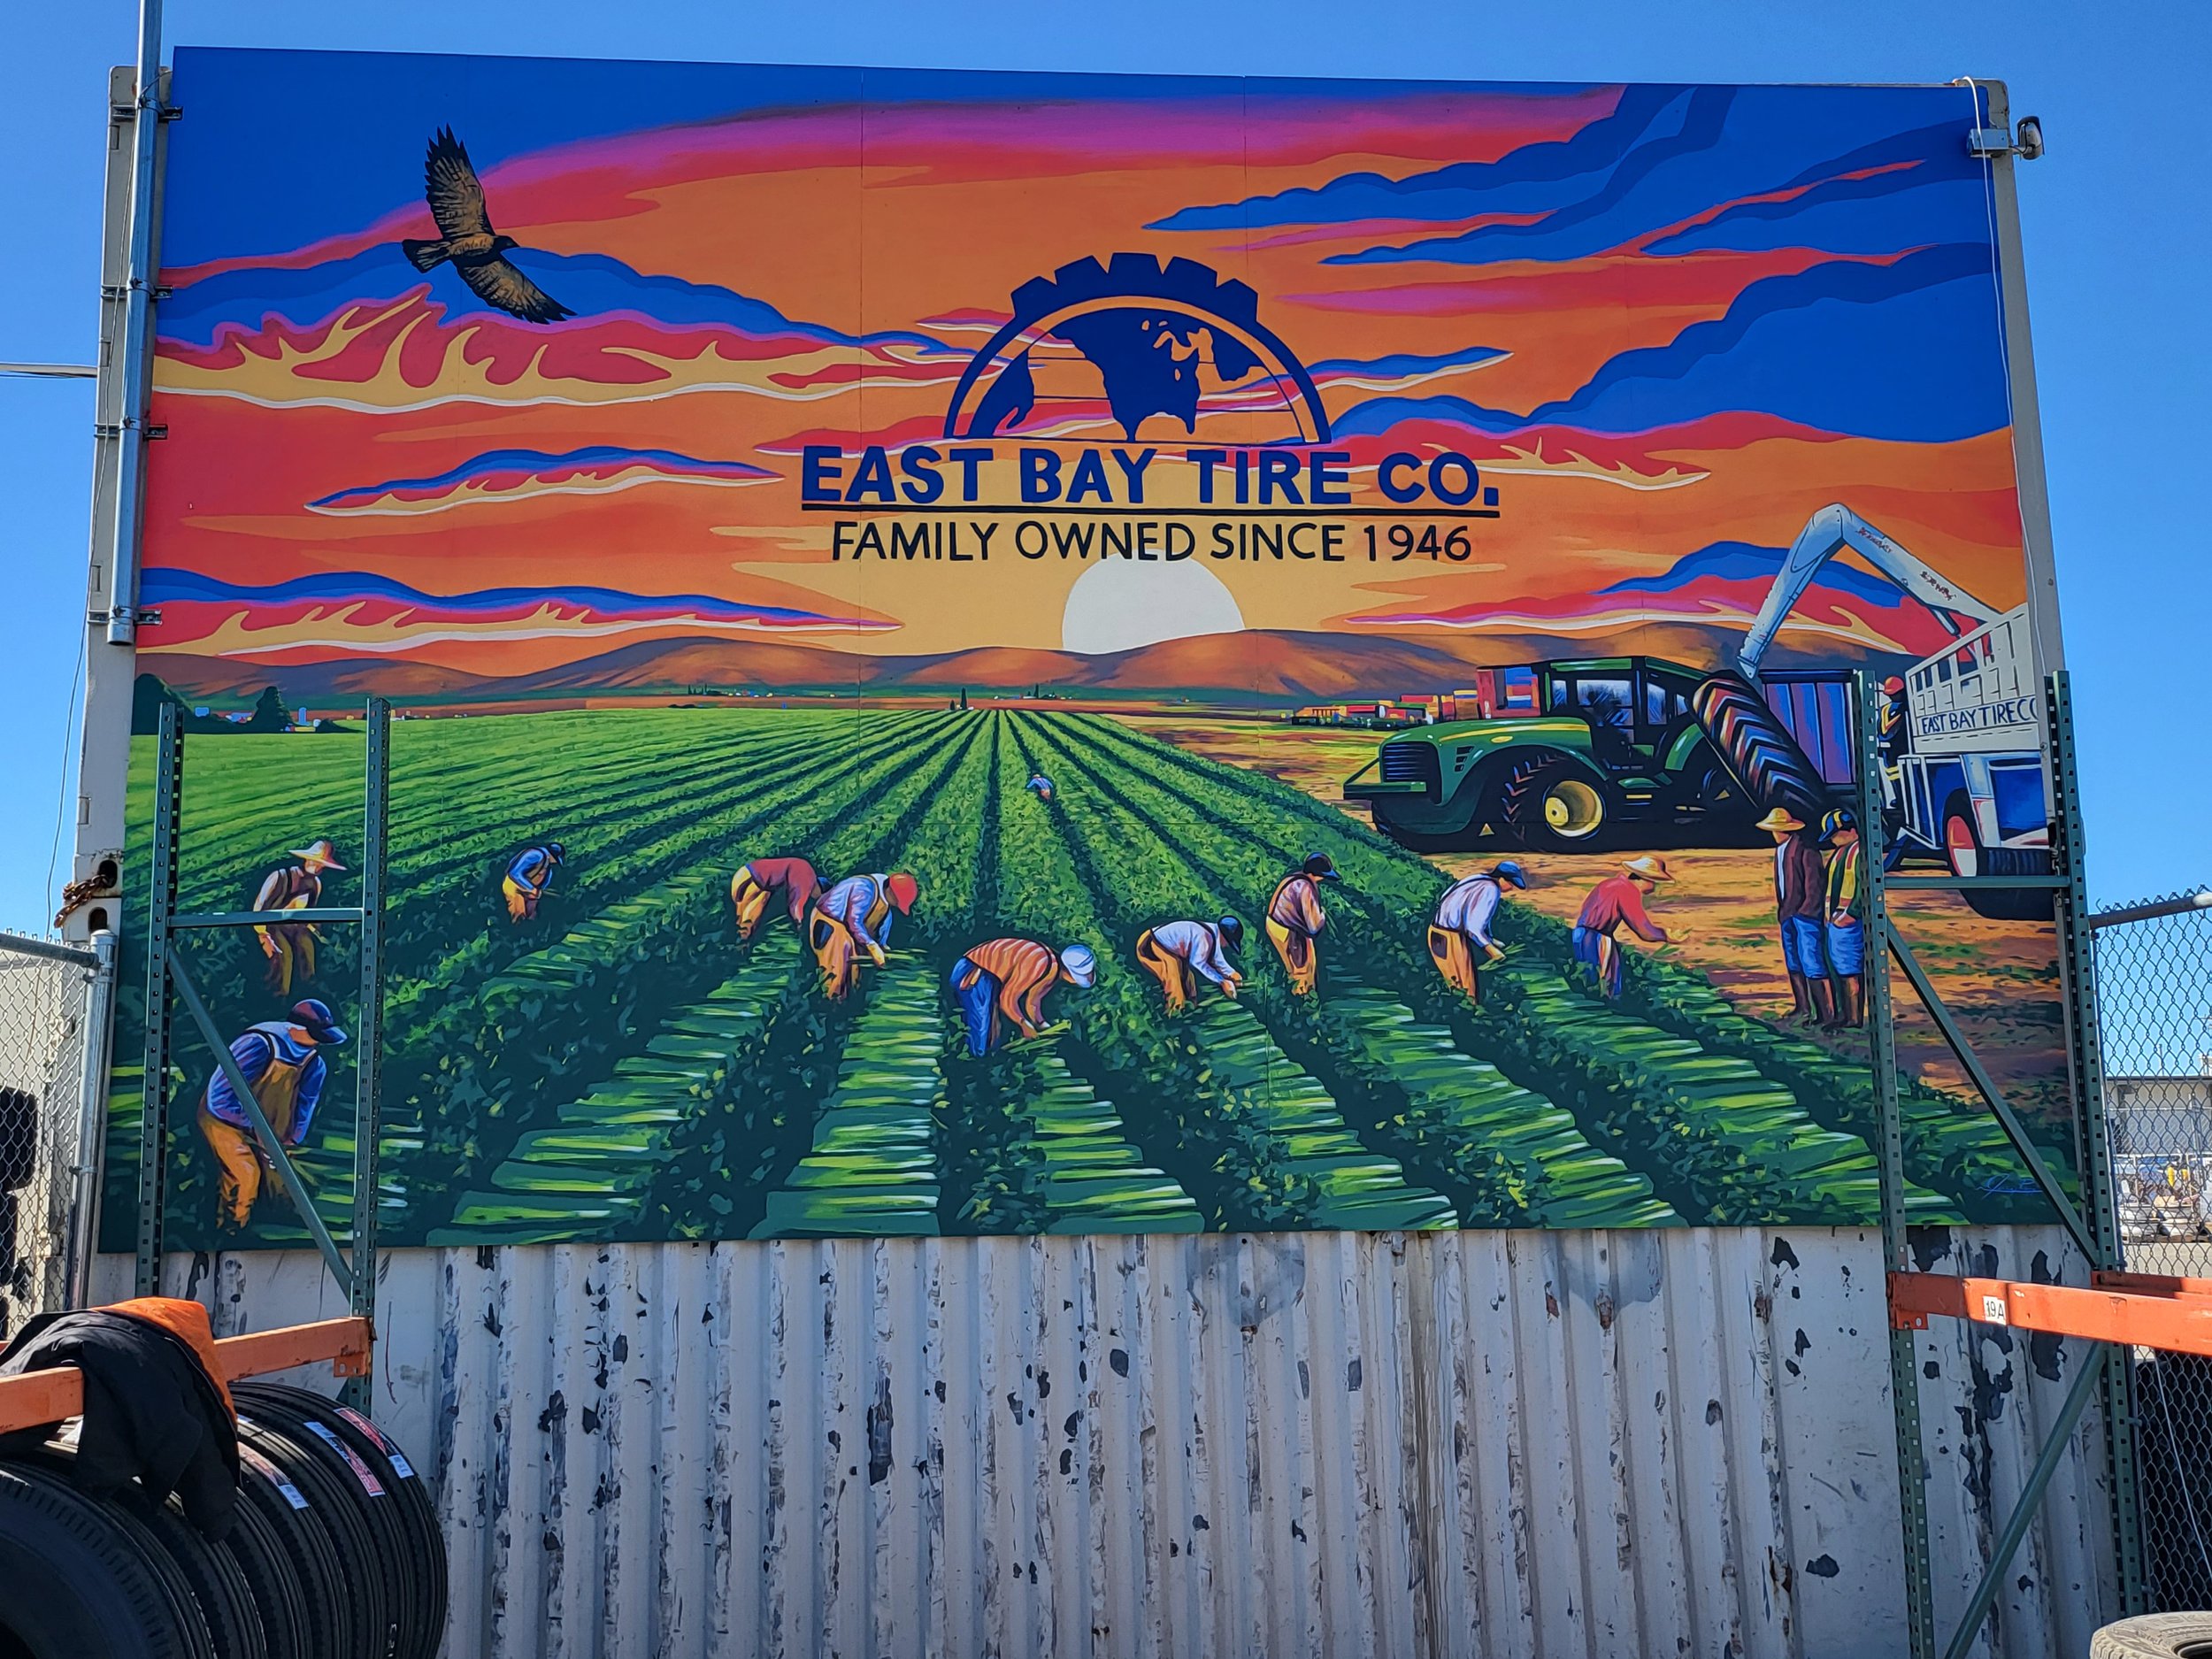 Exterior mural for Easy Bay Tire Co. - Salinas, California